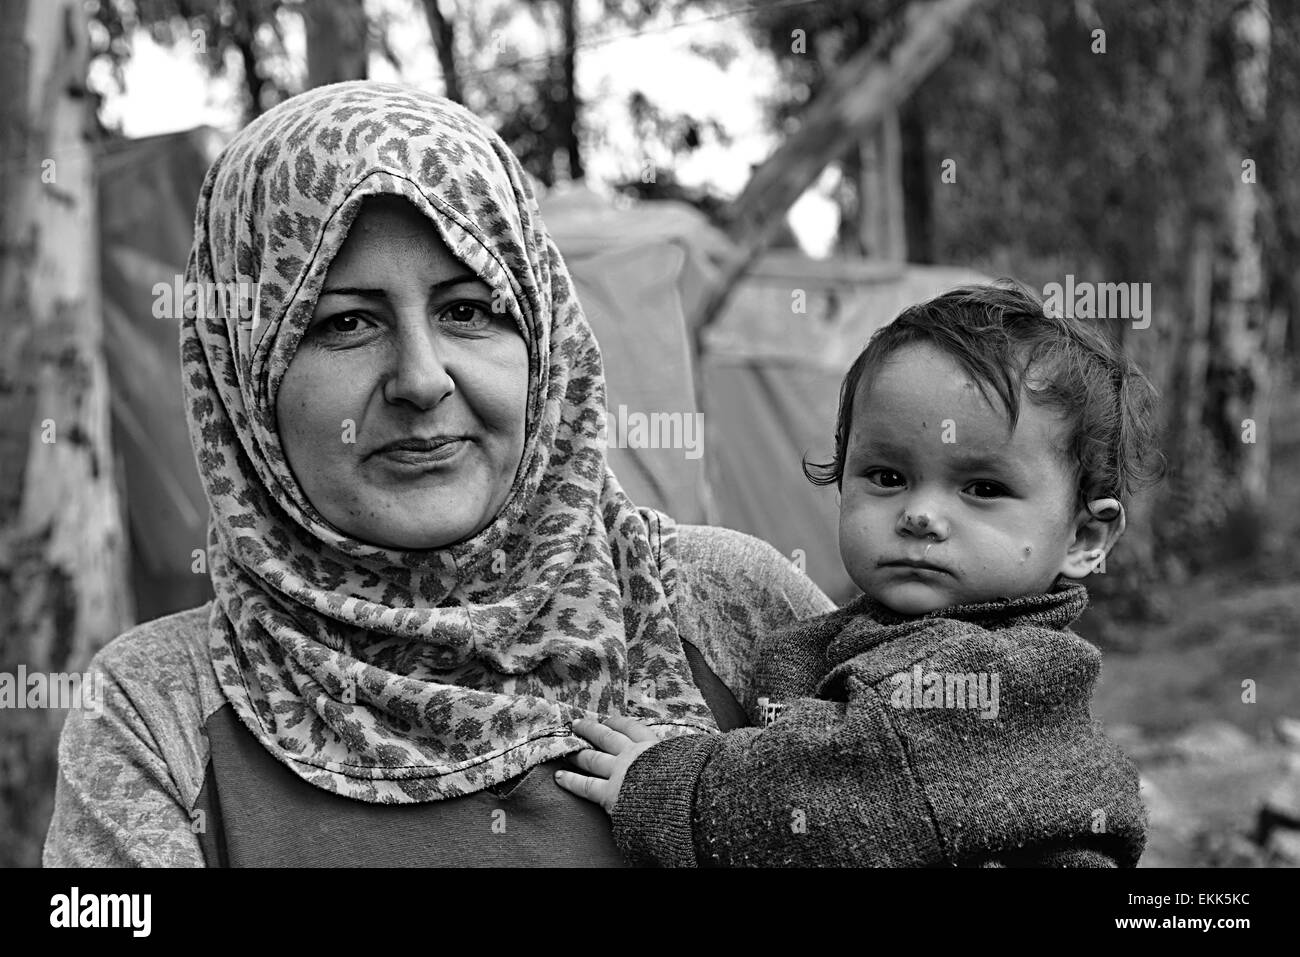 Portrait de réfugiés sans abri vivant en Turquie. 2.4.2015 Reyhanli, Turquie Banque D'Images